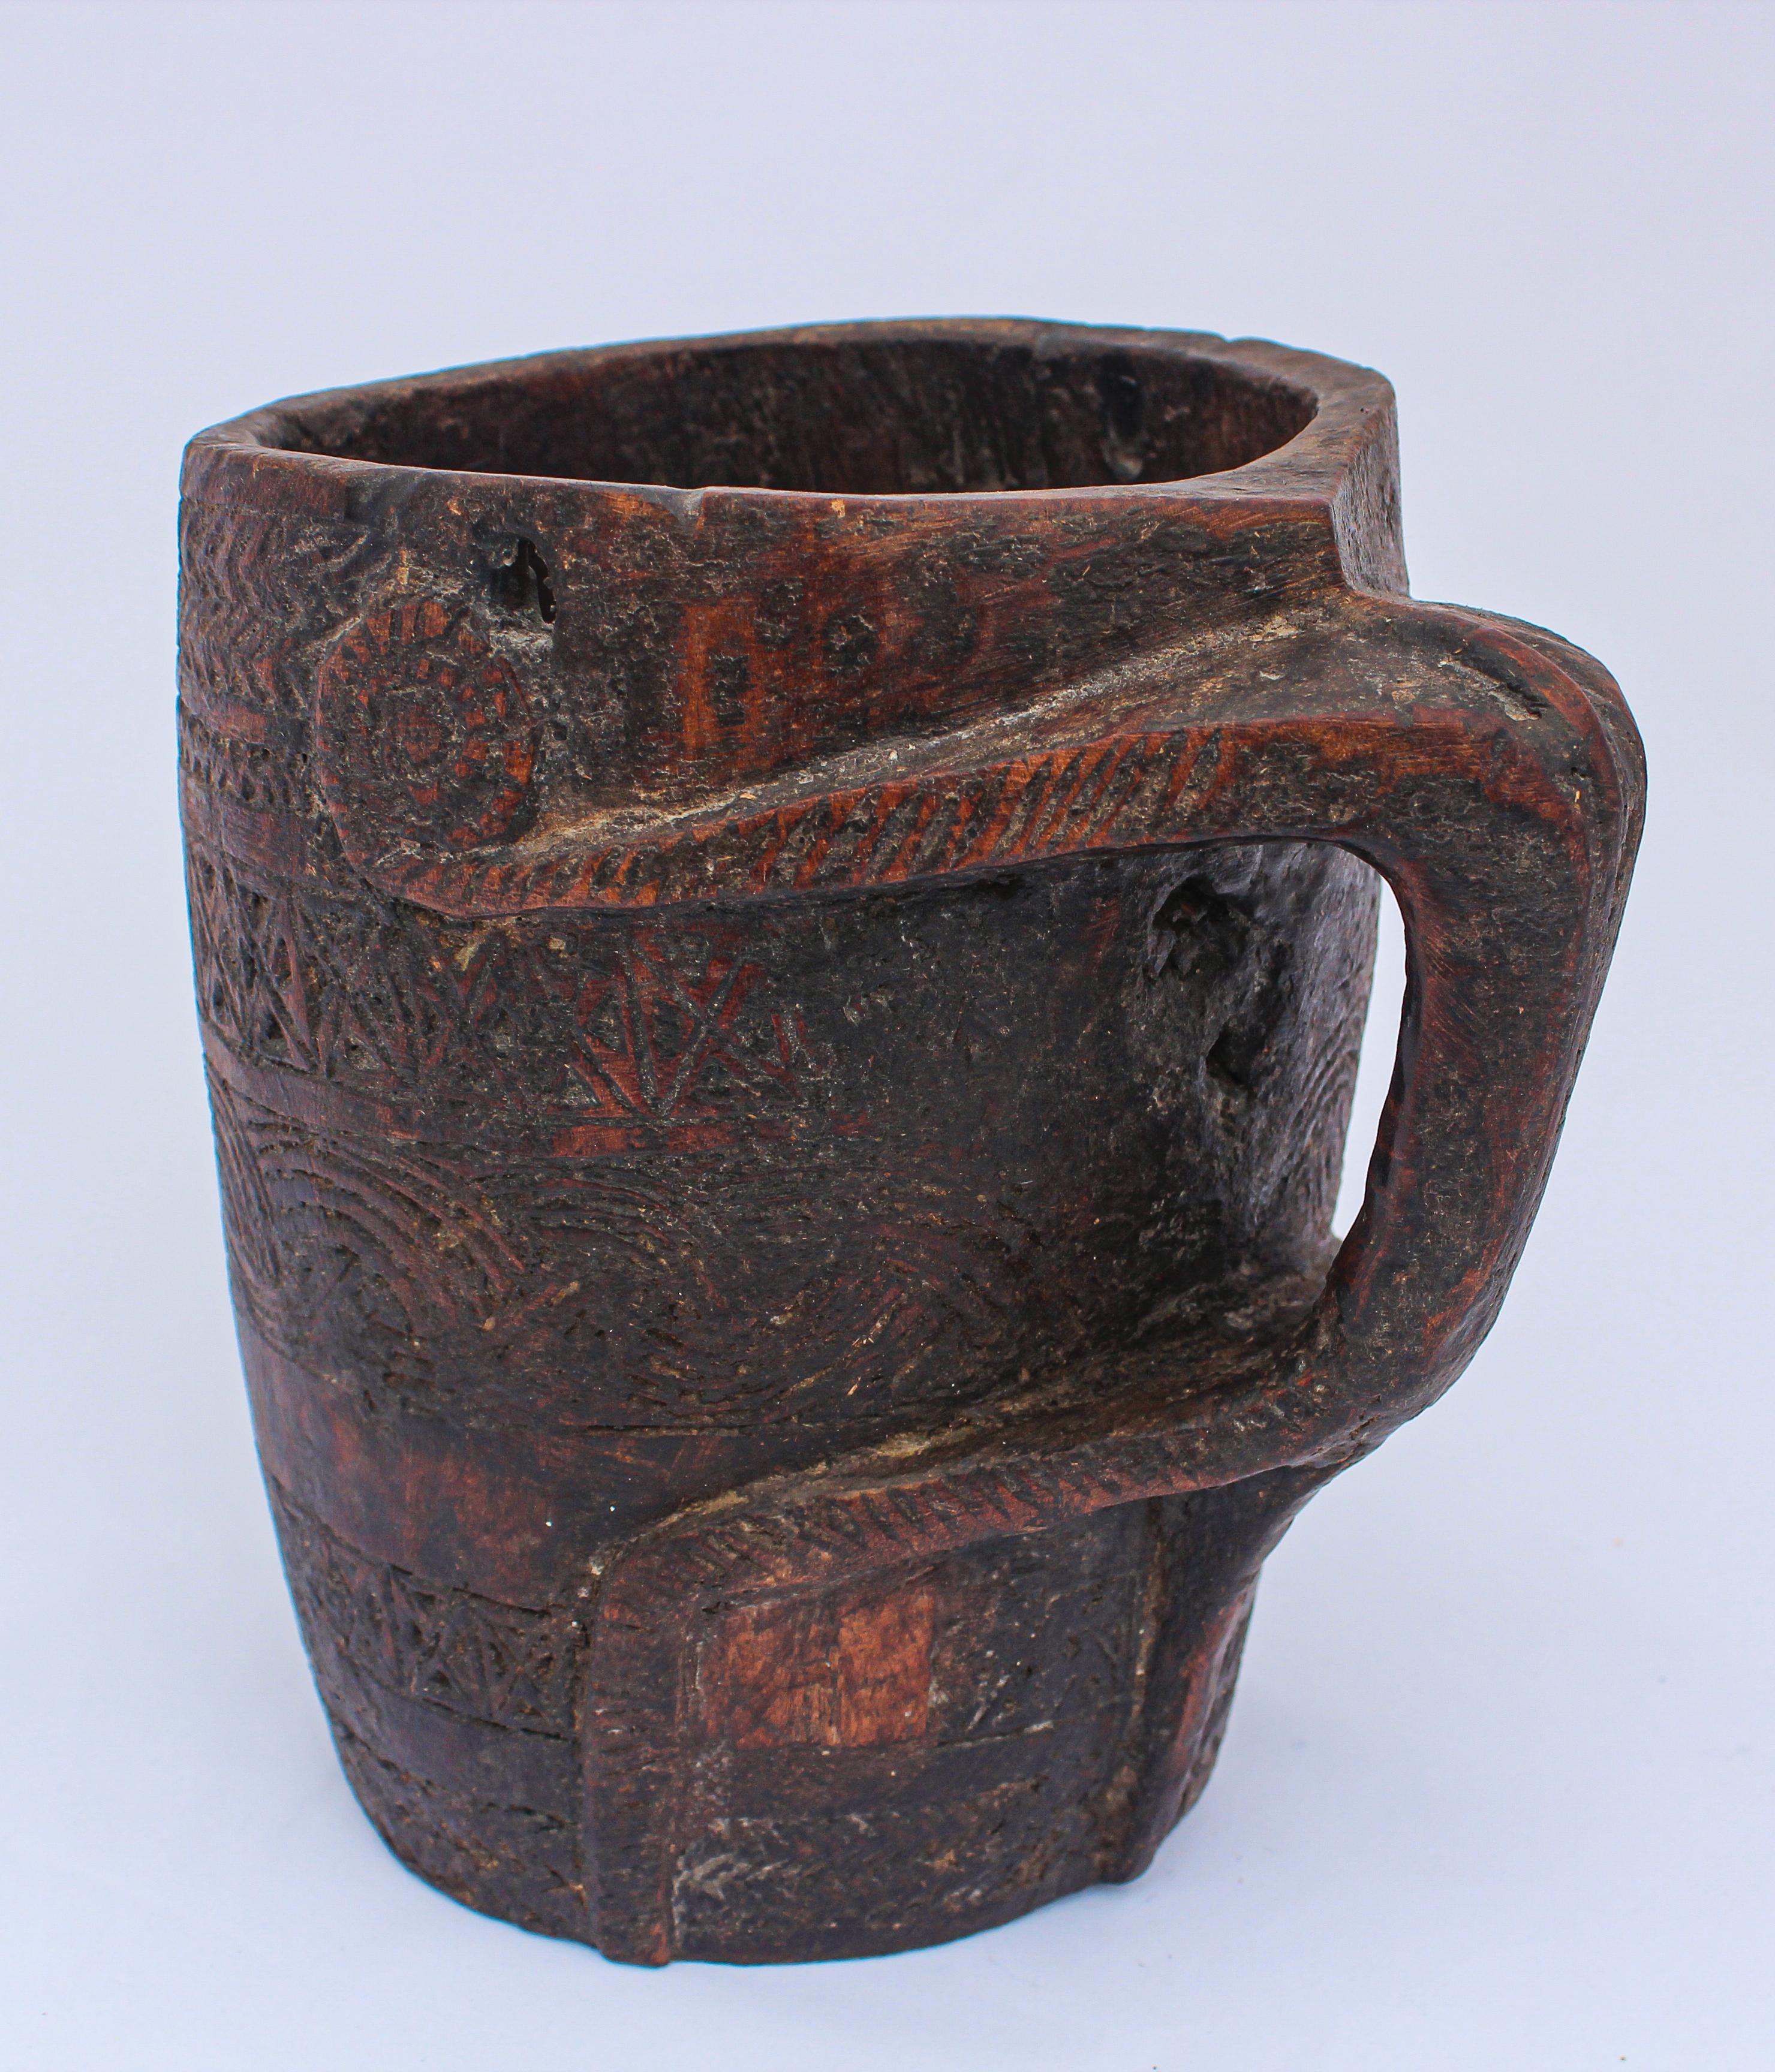 Grand gobelet en bois tribal sculpté à la main, pot à lait népalais avec poignée.
Pot à lait tribal antique du début du 20e siècle avec motif incisé.
Ce pot à lait rustique a été sculpté à la main dans du bois dur local dans les moyennes collines de